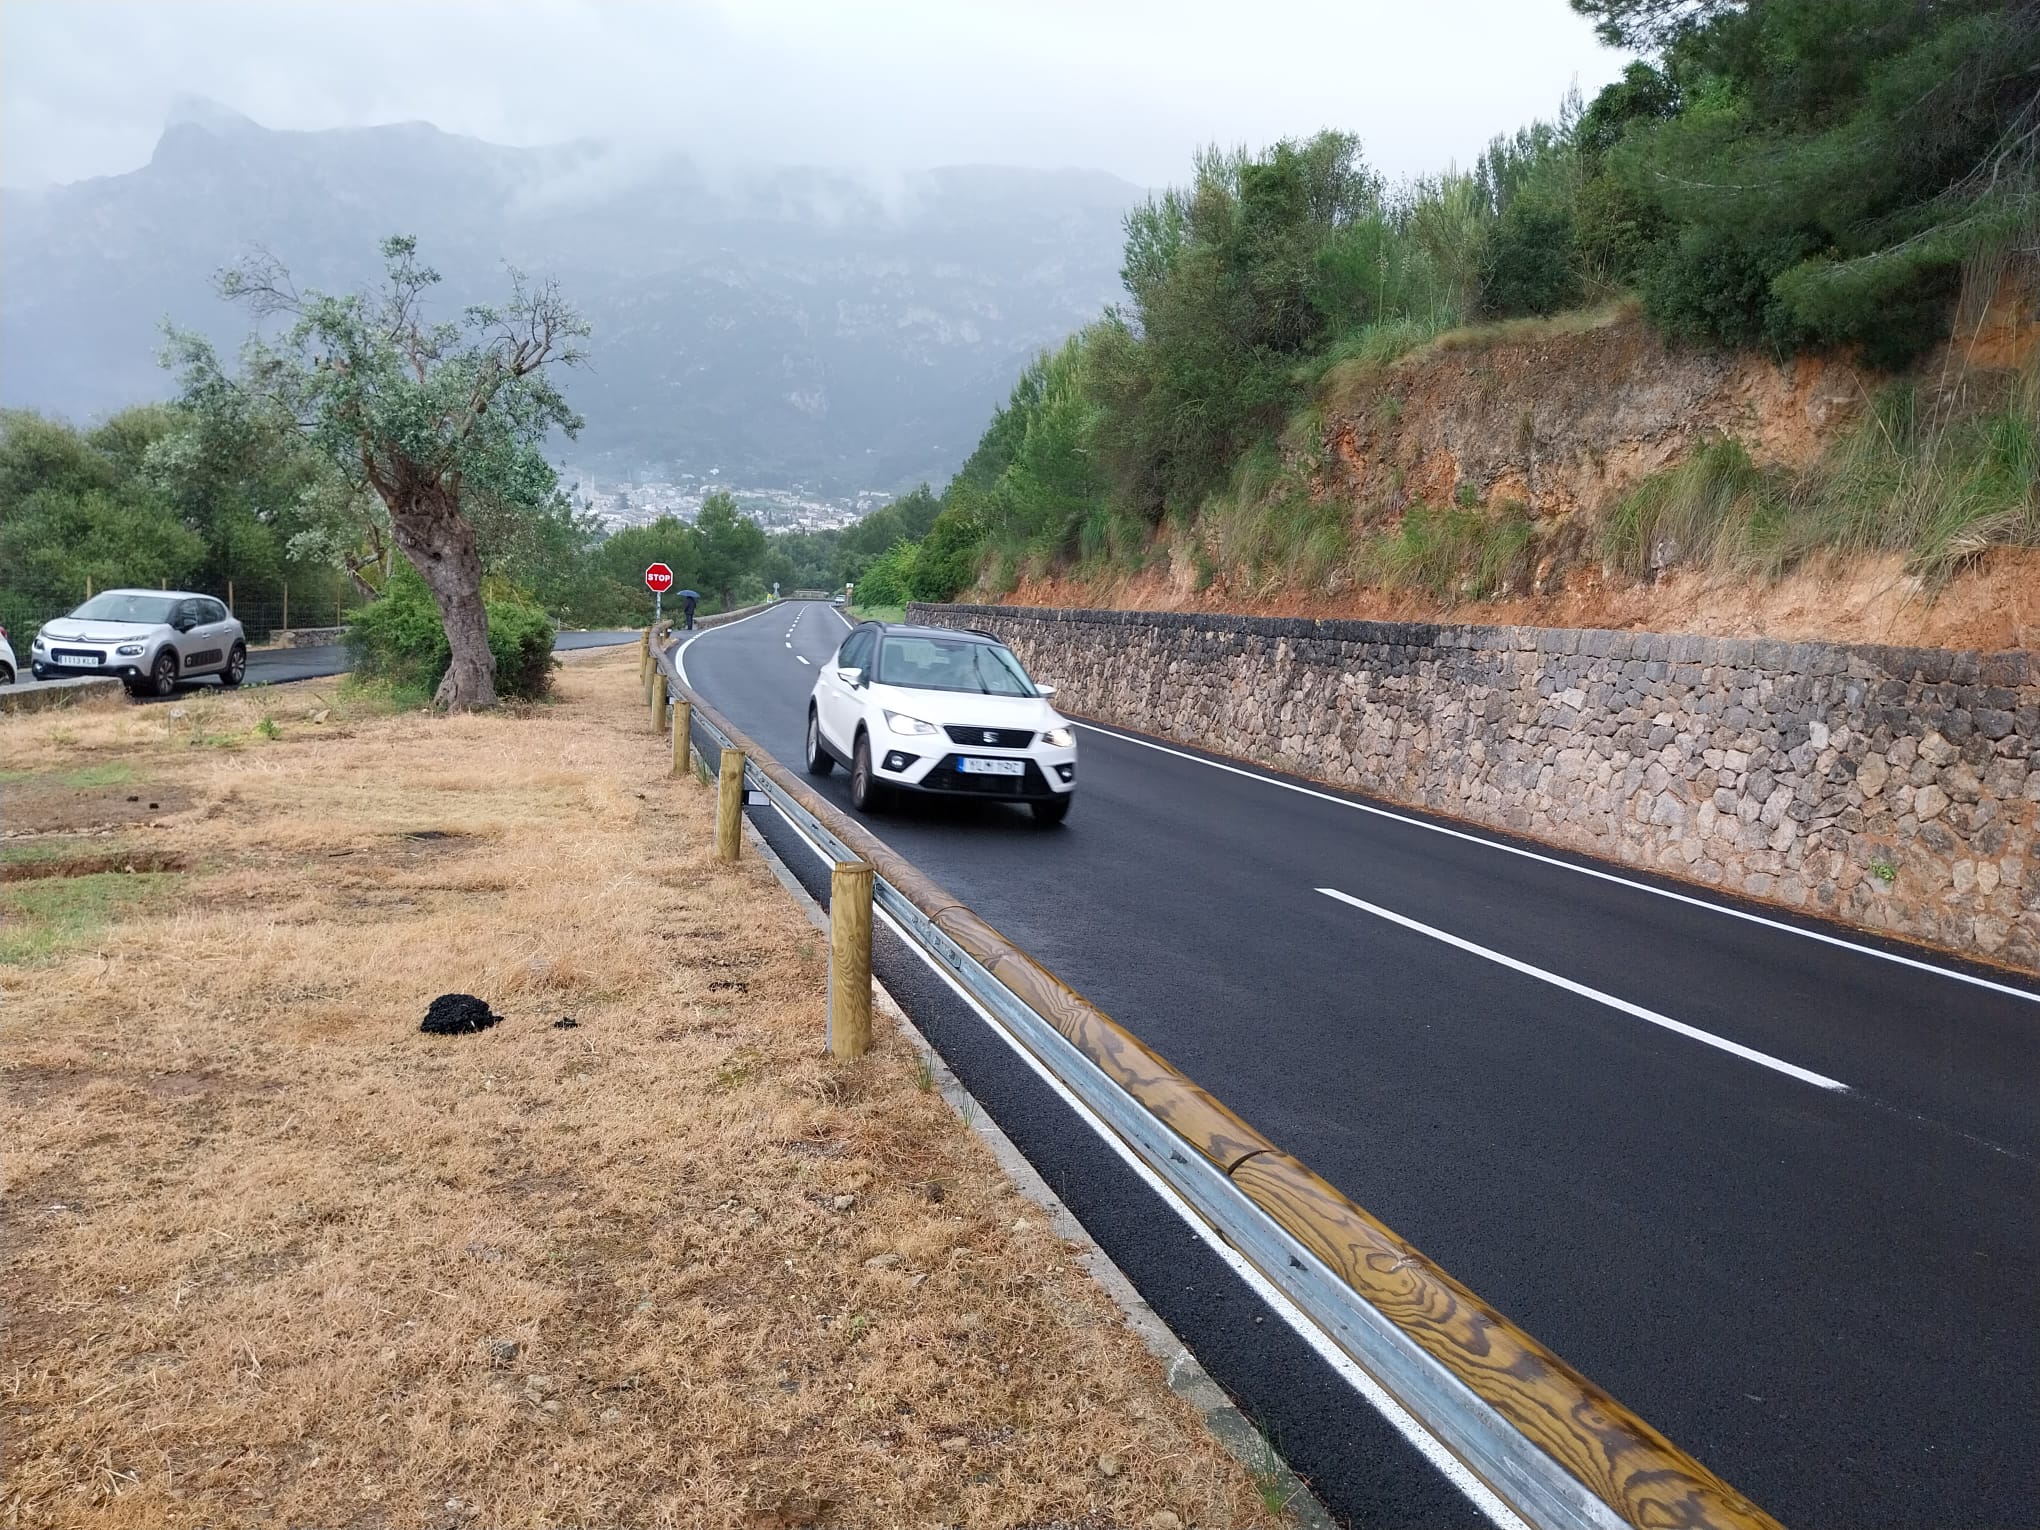 Imatge de la carretera Sóller-Llucalcari amb les noves barreres de seguretat i asfalt d'alta qualitat.